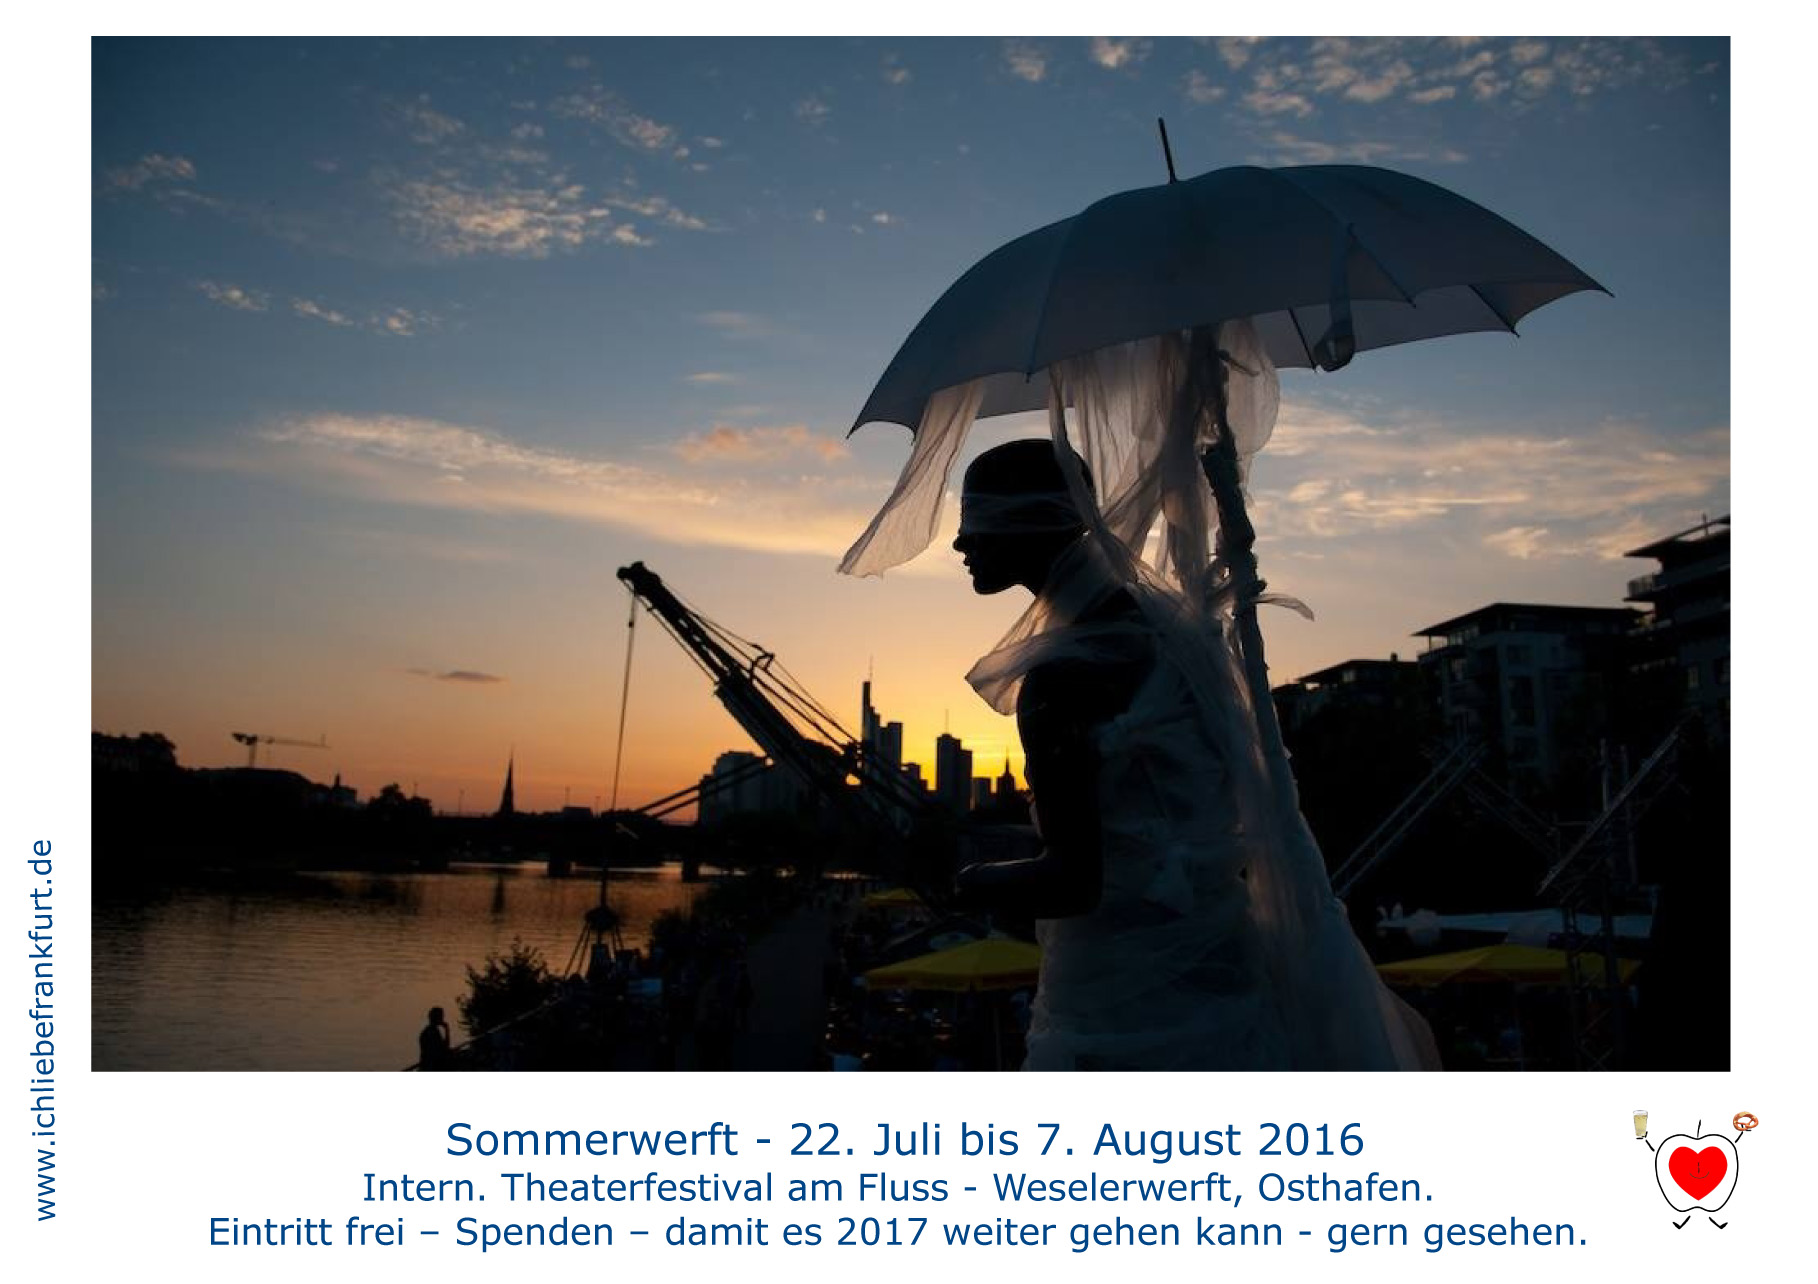   2016-07-26   27 Sommerwerft Antagon       2016-07-22 Sommerwerft AntagonTheater